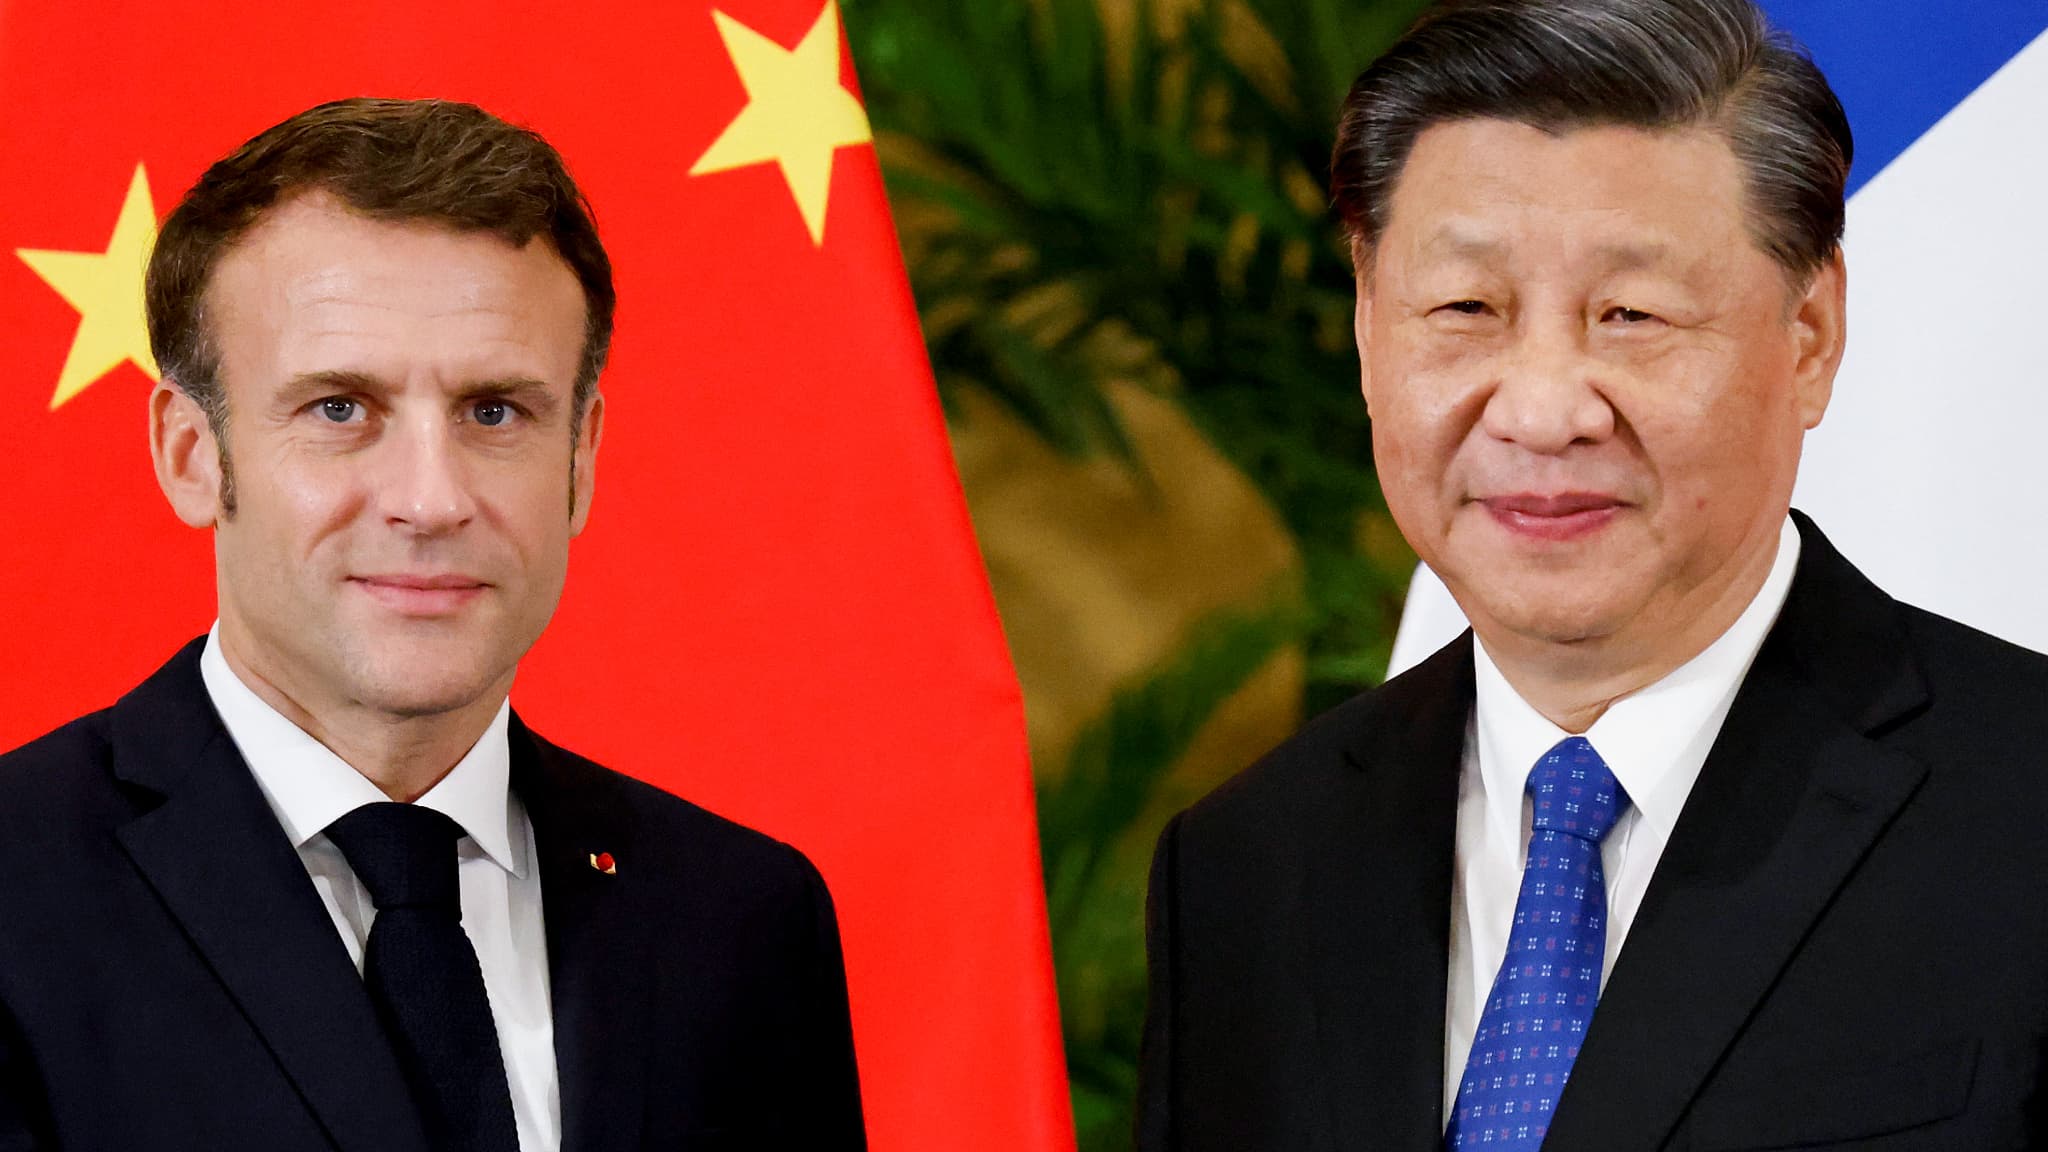 Macron îl îndeamnă pe Xi Jinping să-și unească forțele pentru a depăși criza mondială! Liderii s-au întâlnit la summitul G20